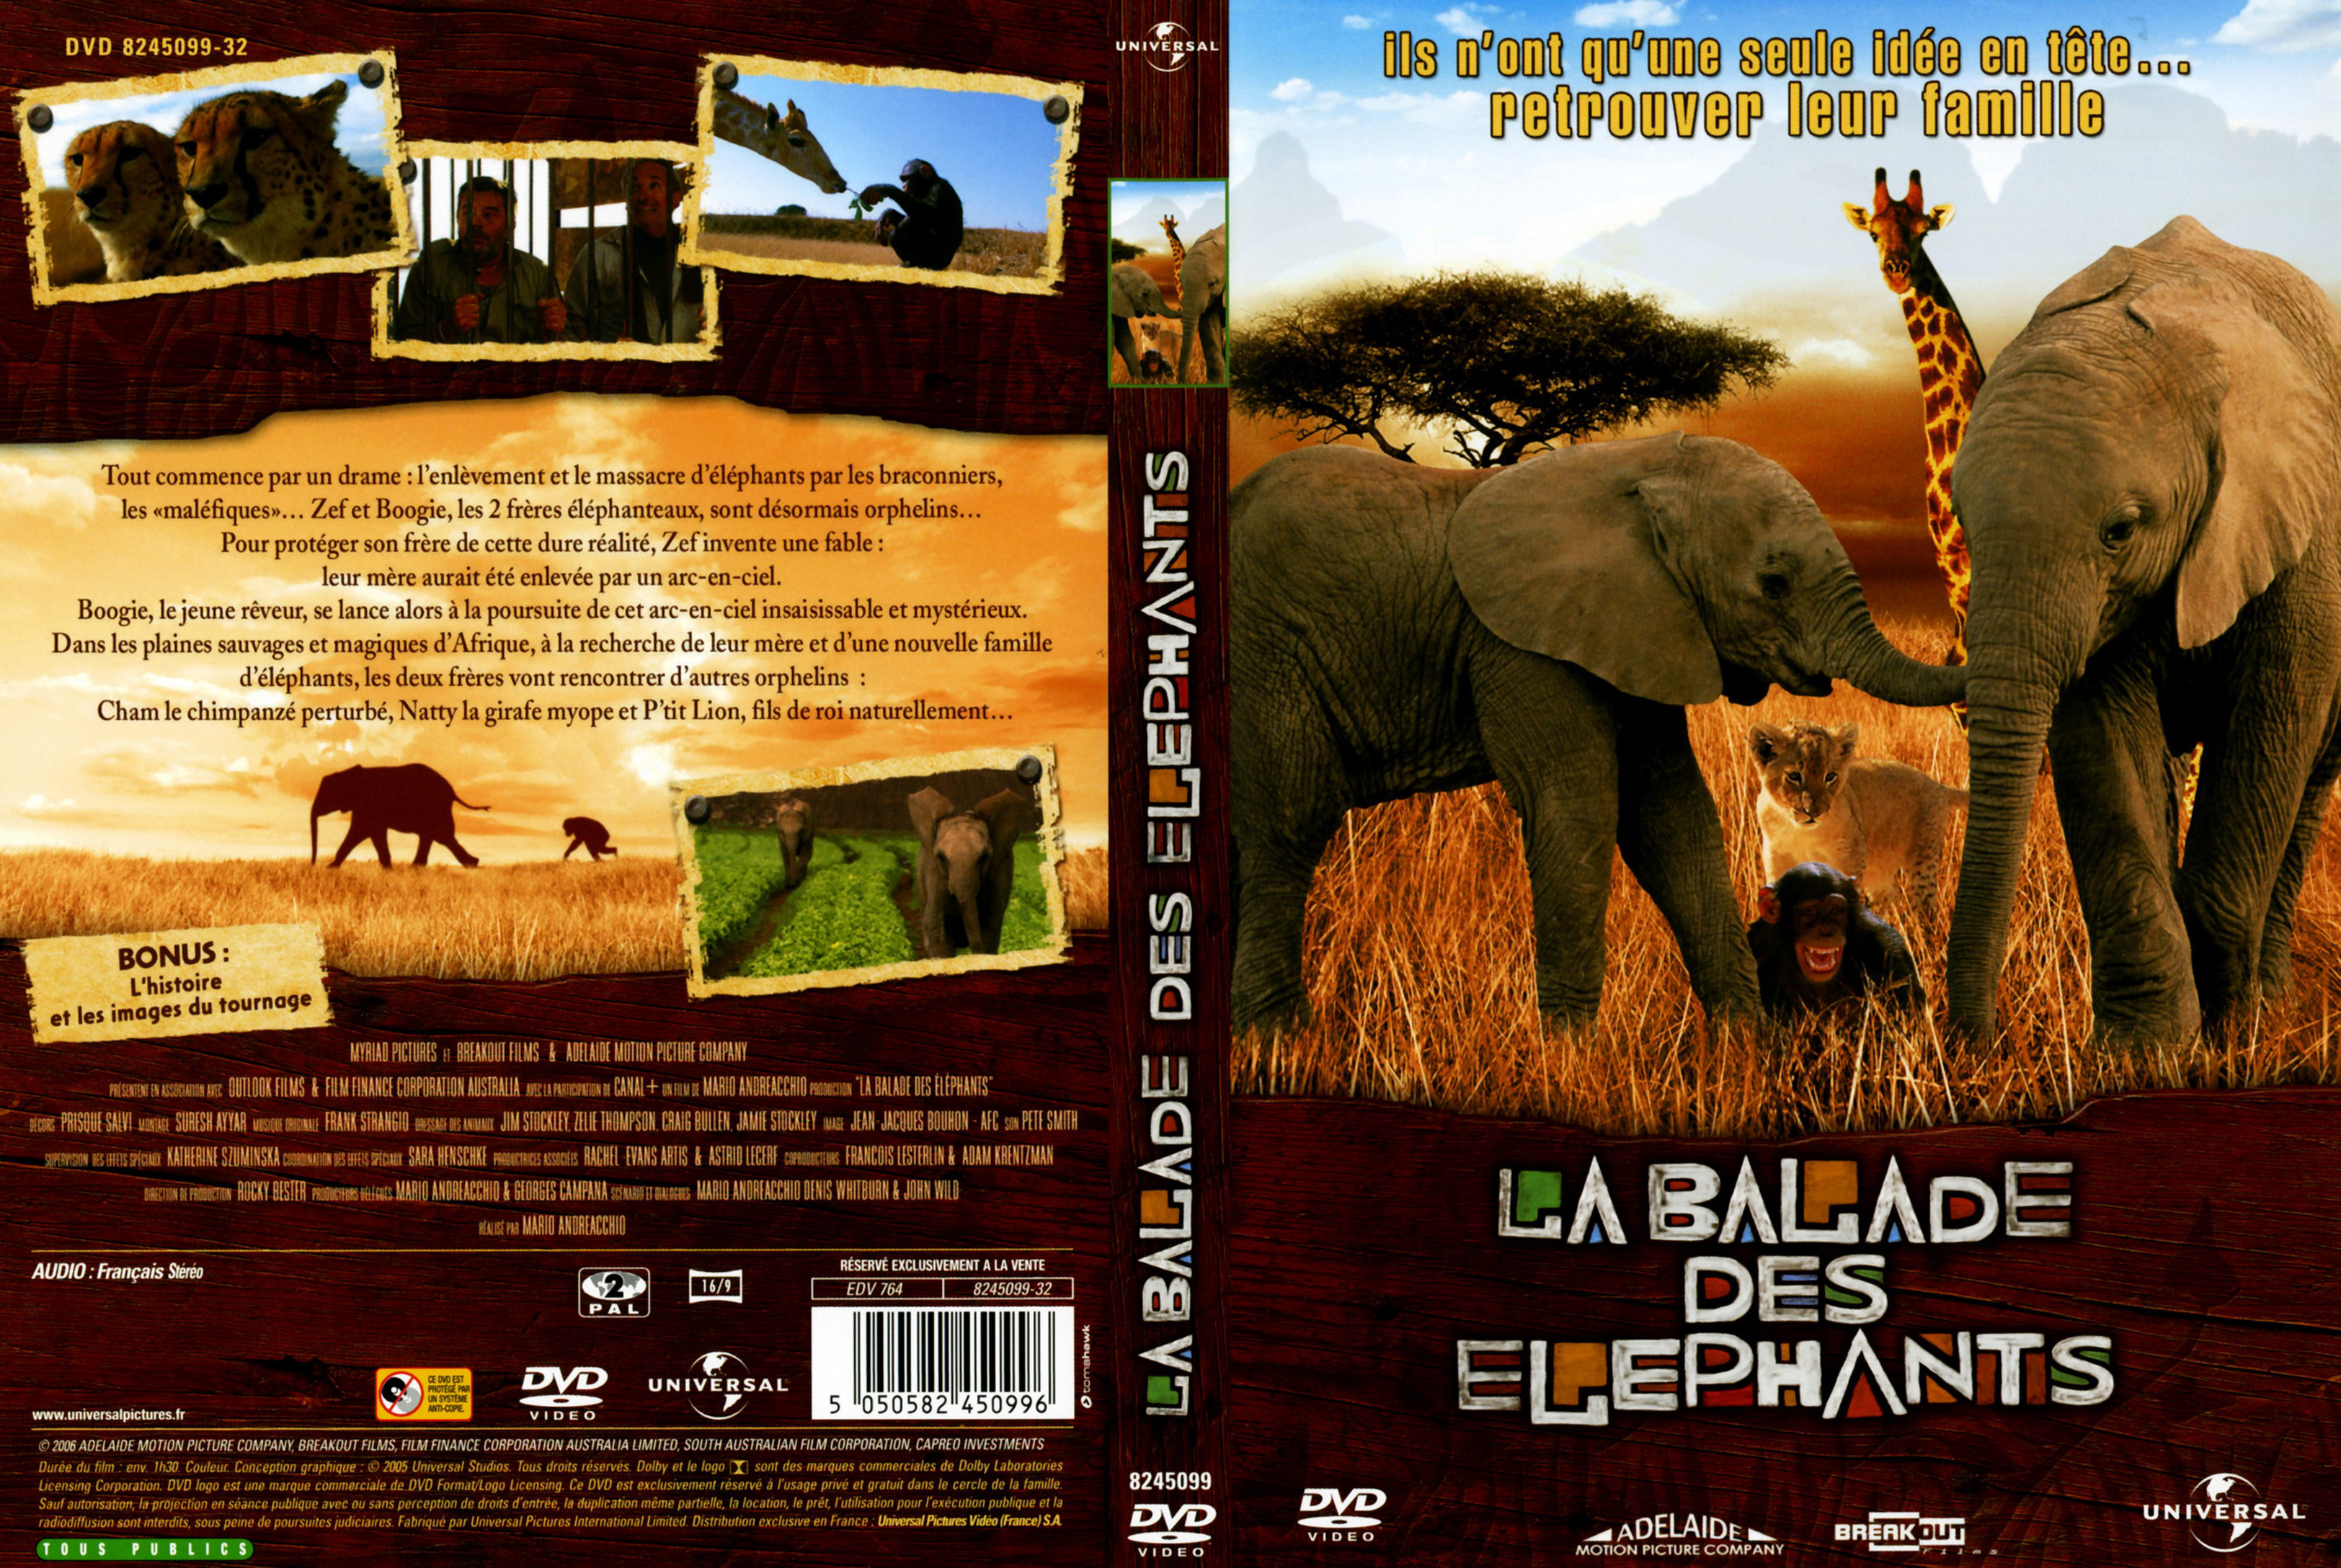 Jaquette DVD La ballade des elephants